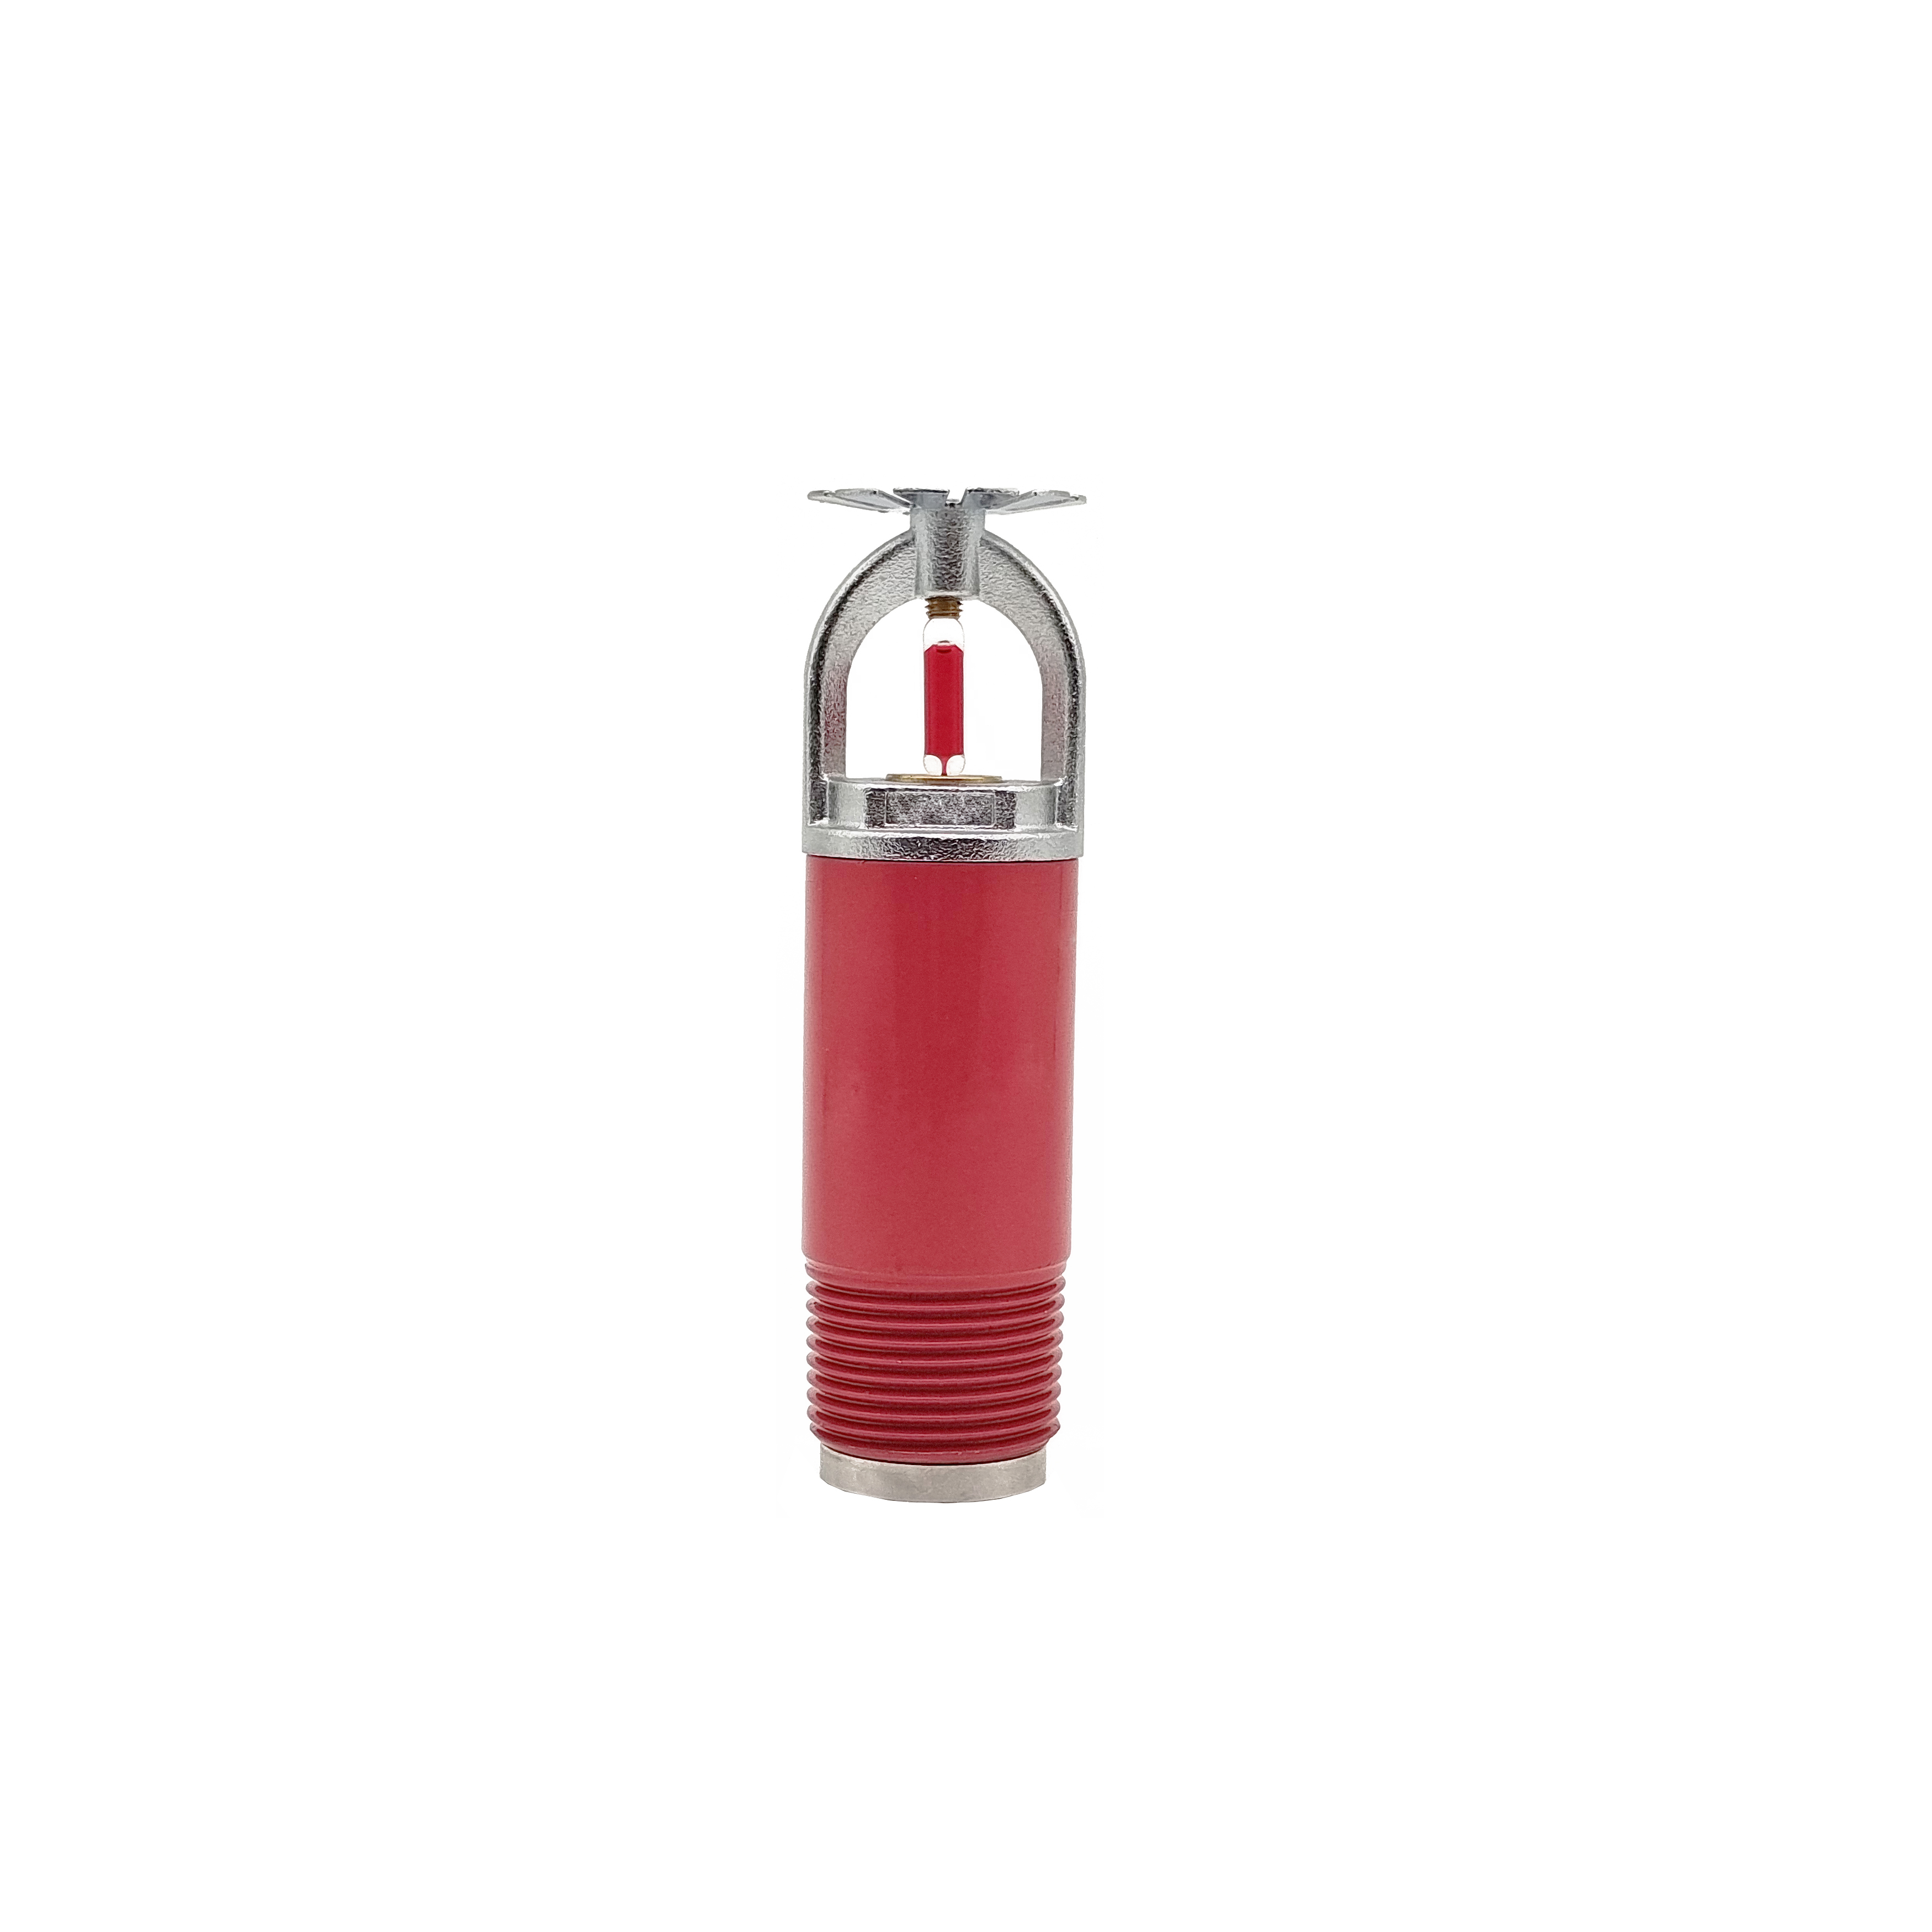 Хорошие оптовые поставщики 1/2-дюймовый сухой тип подвесной спринклер огня для пожаротушения